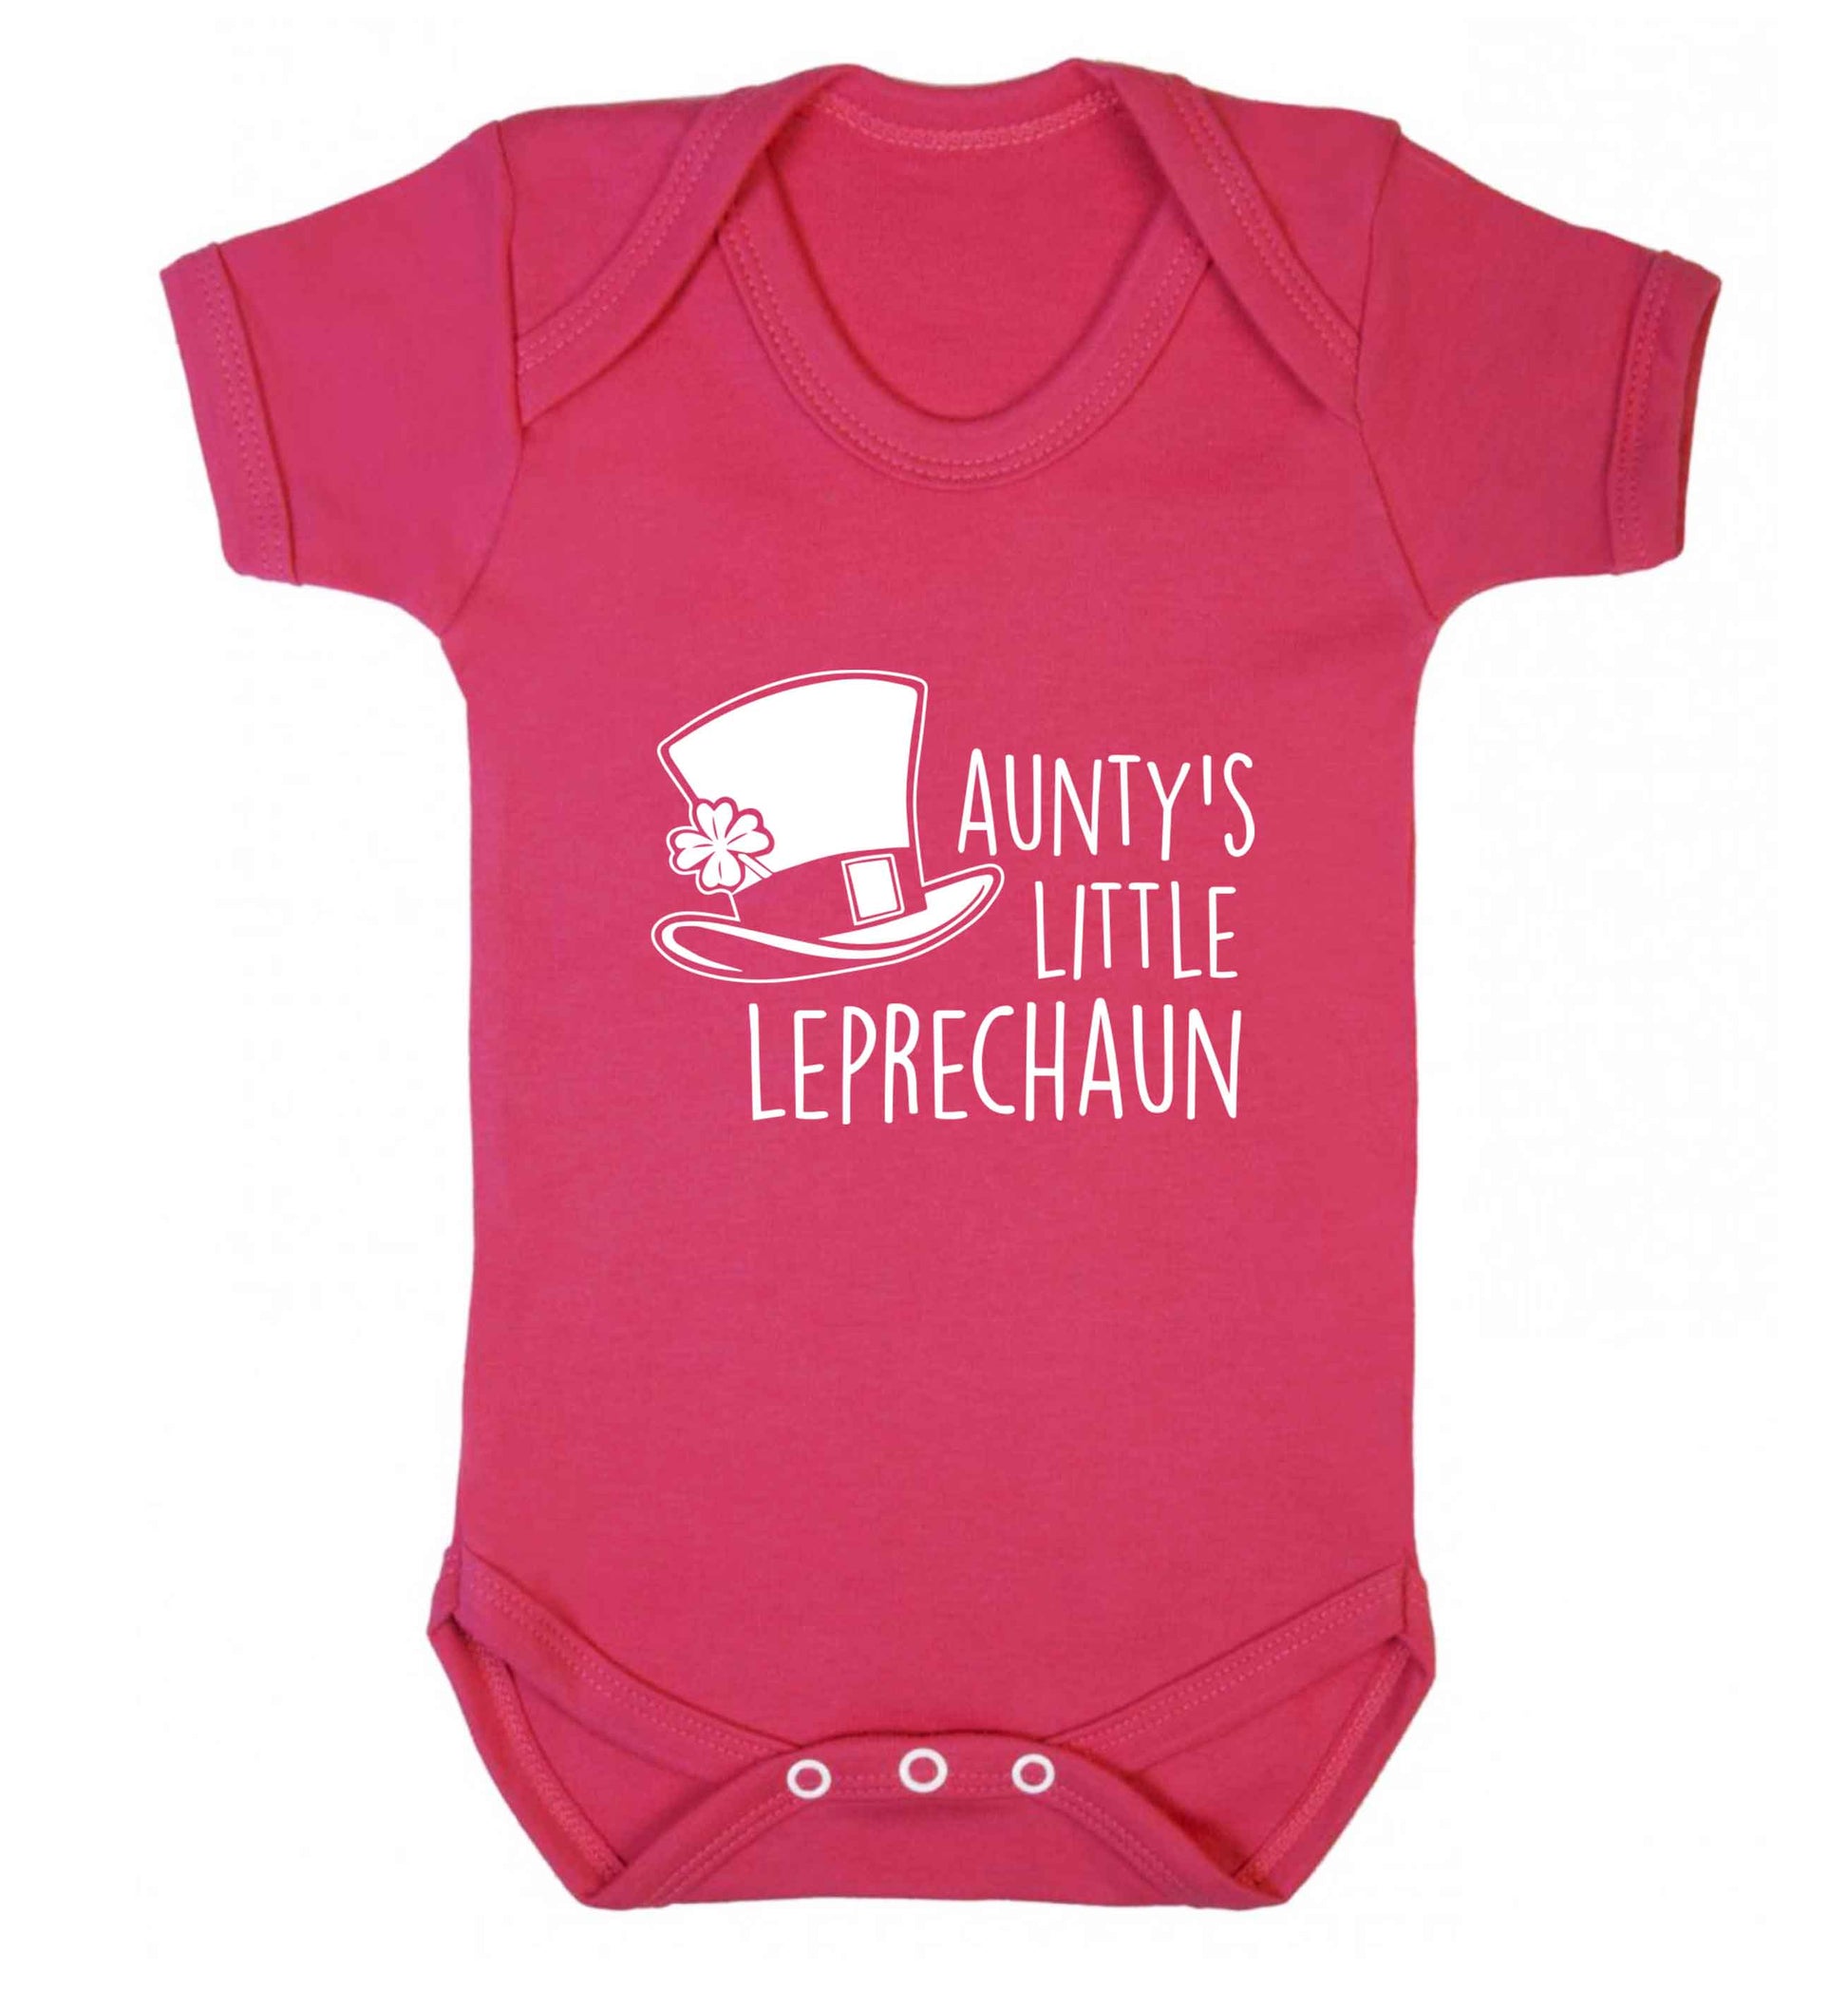 Aunty's little leprechaun baby vest dark pink 18-24 months